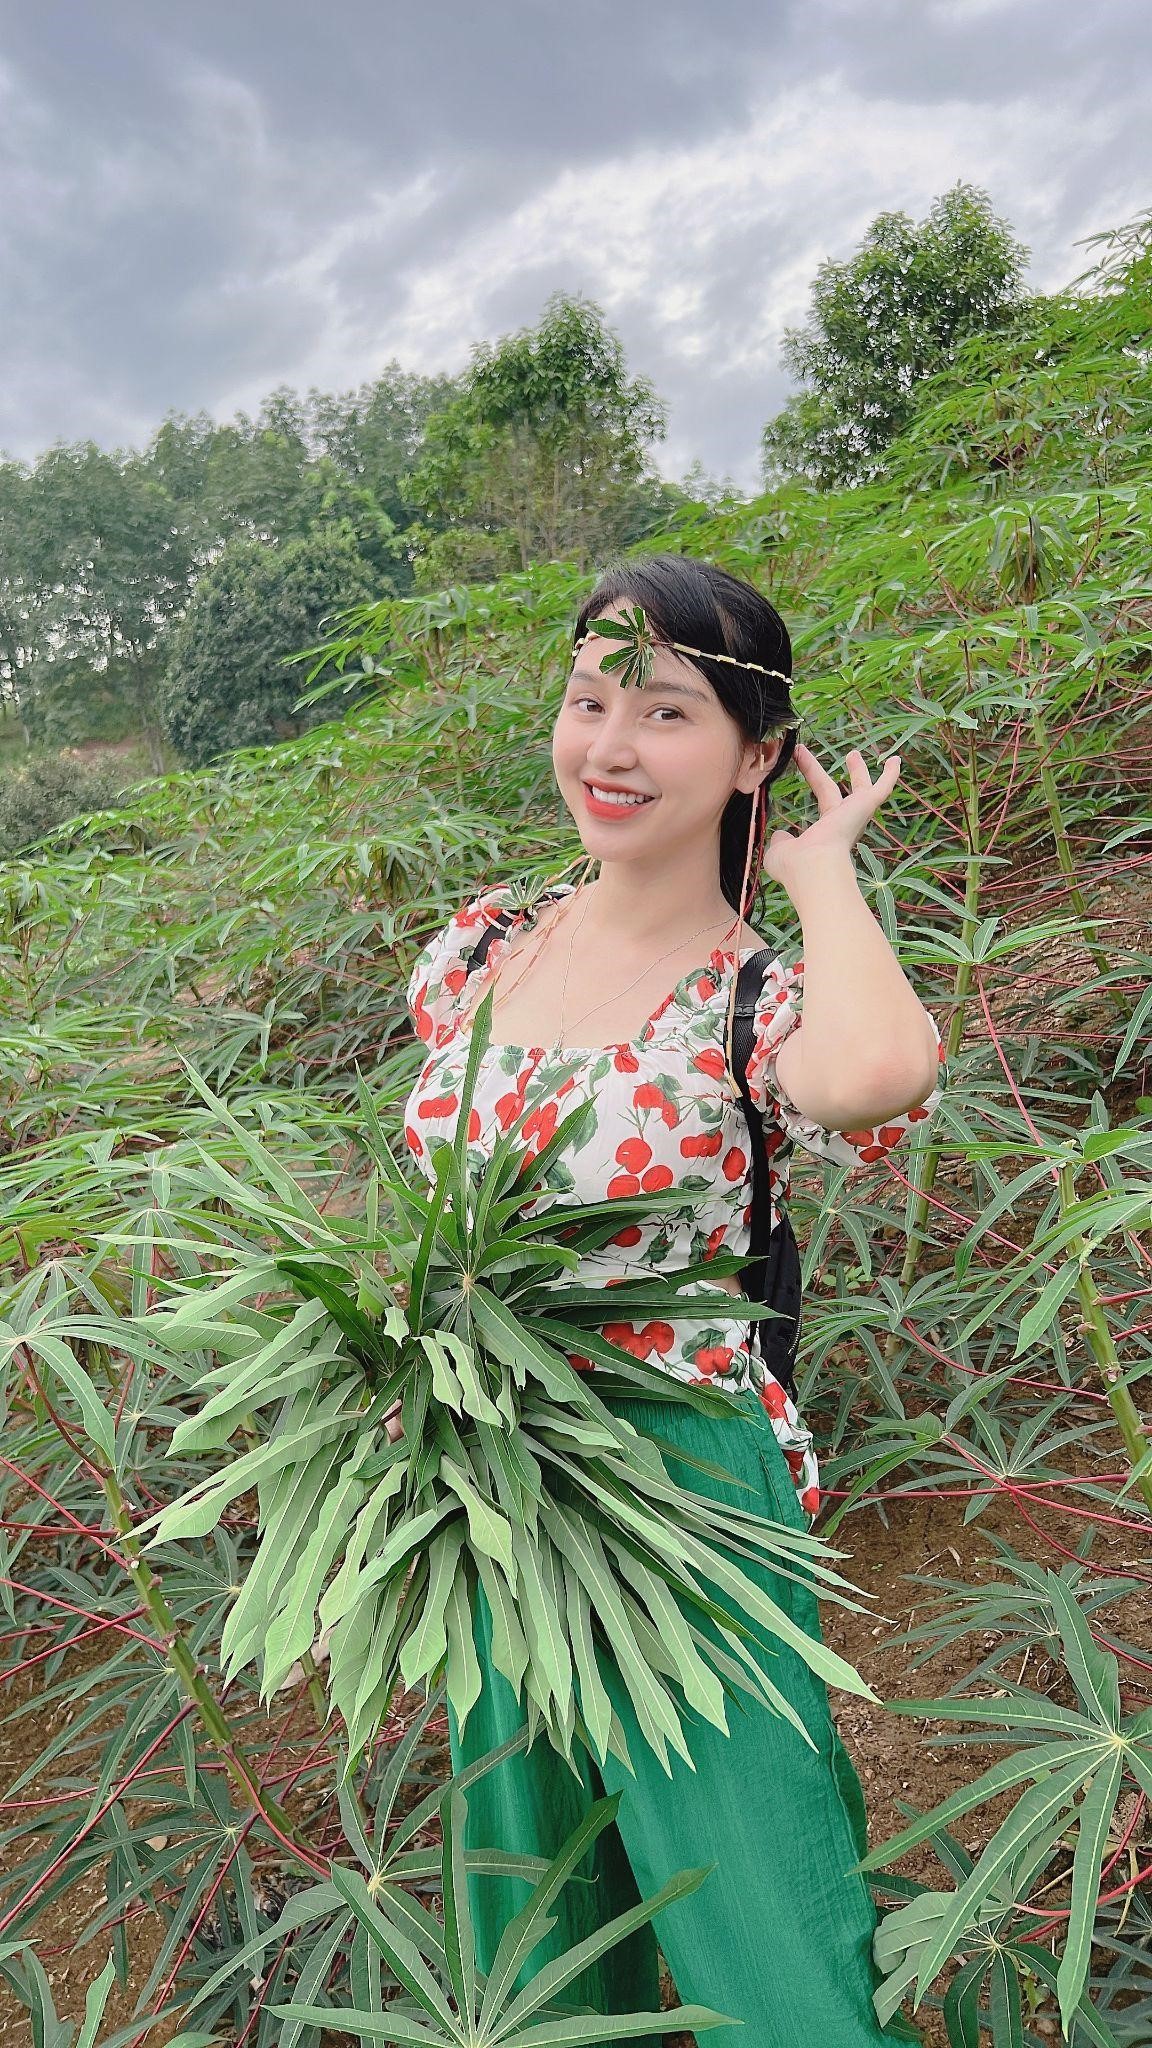 Cô gái trẻ gửi tâm thư cho Bầu Đức bày tỏ khát vọng phát triển nông nghiệp Việt - ảnh 1